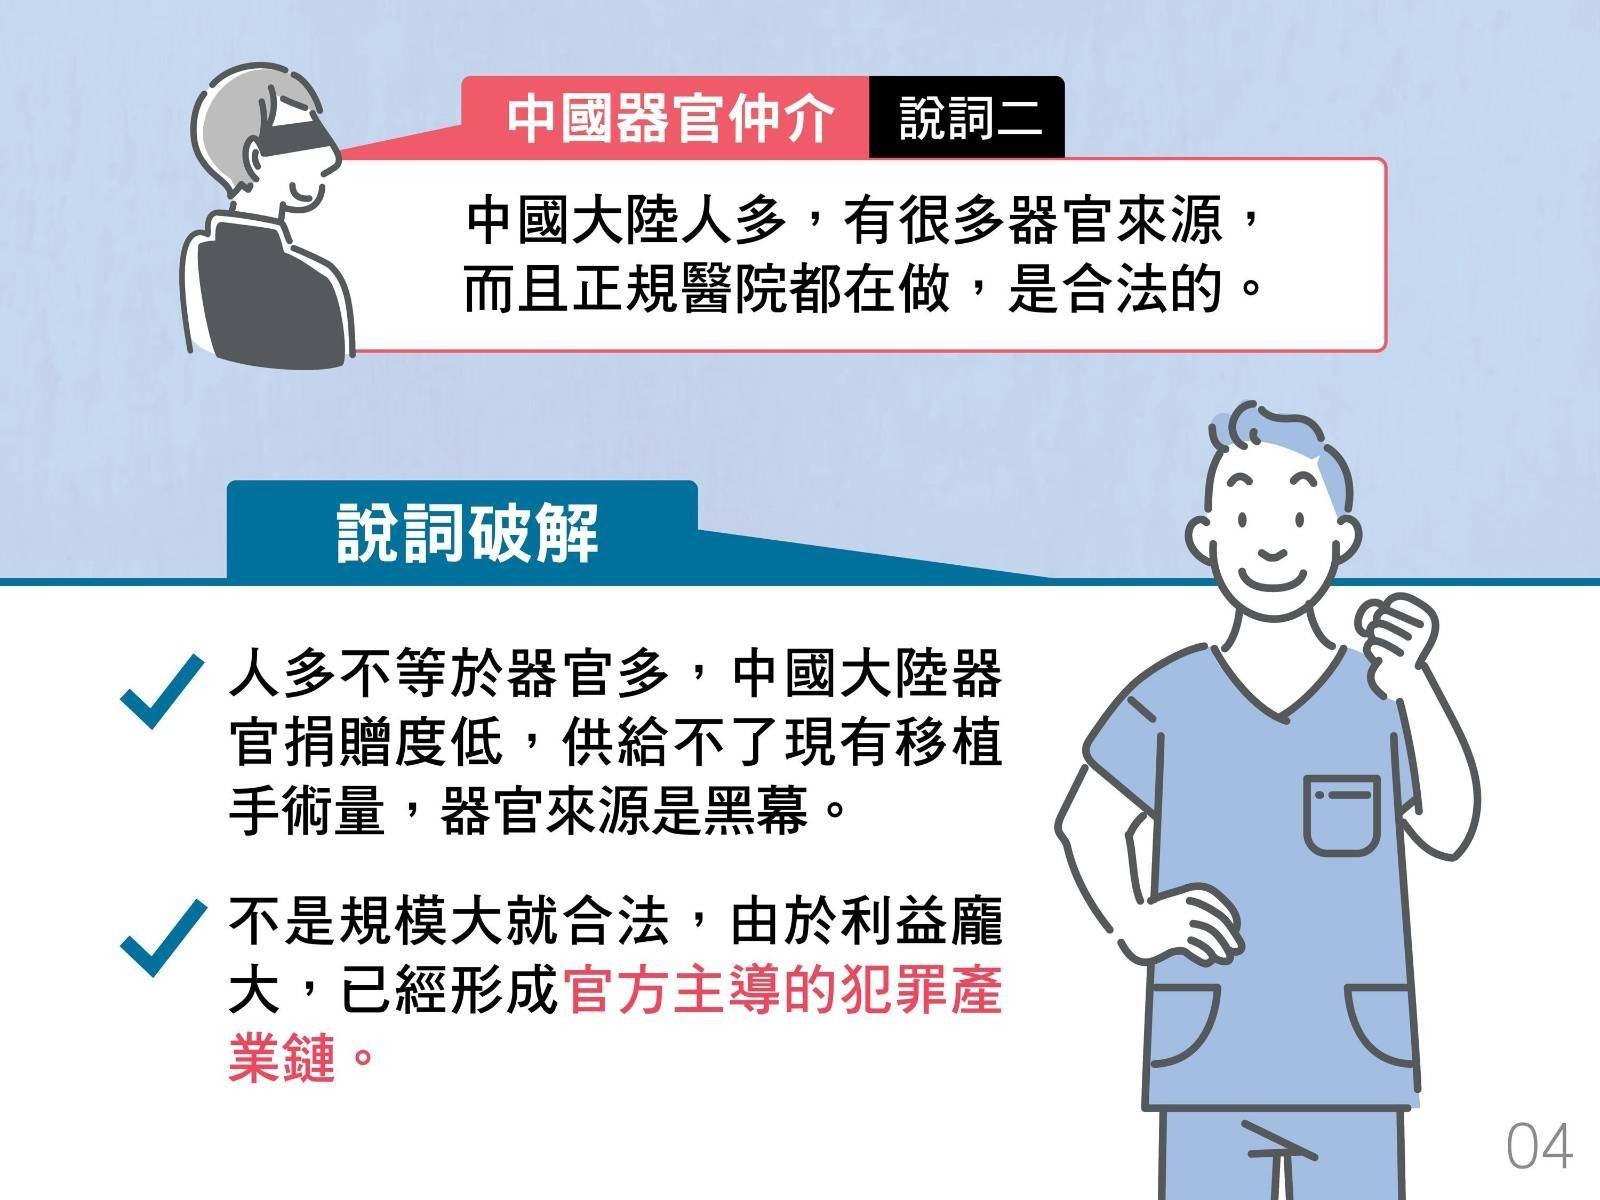 中國器官仲介說詞二：中國大陸人多，有很多器官來源，而且正規醫院都在做，是合法的。